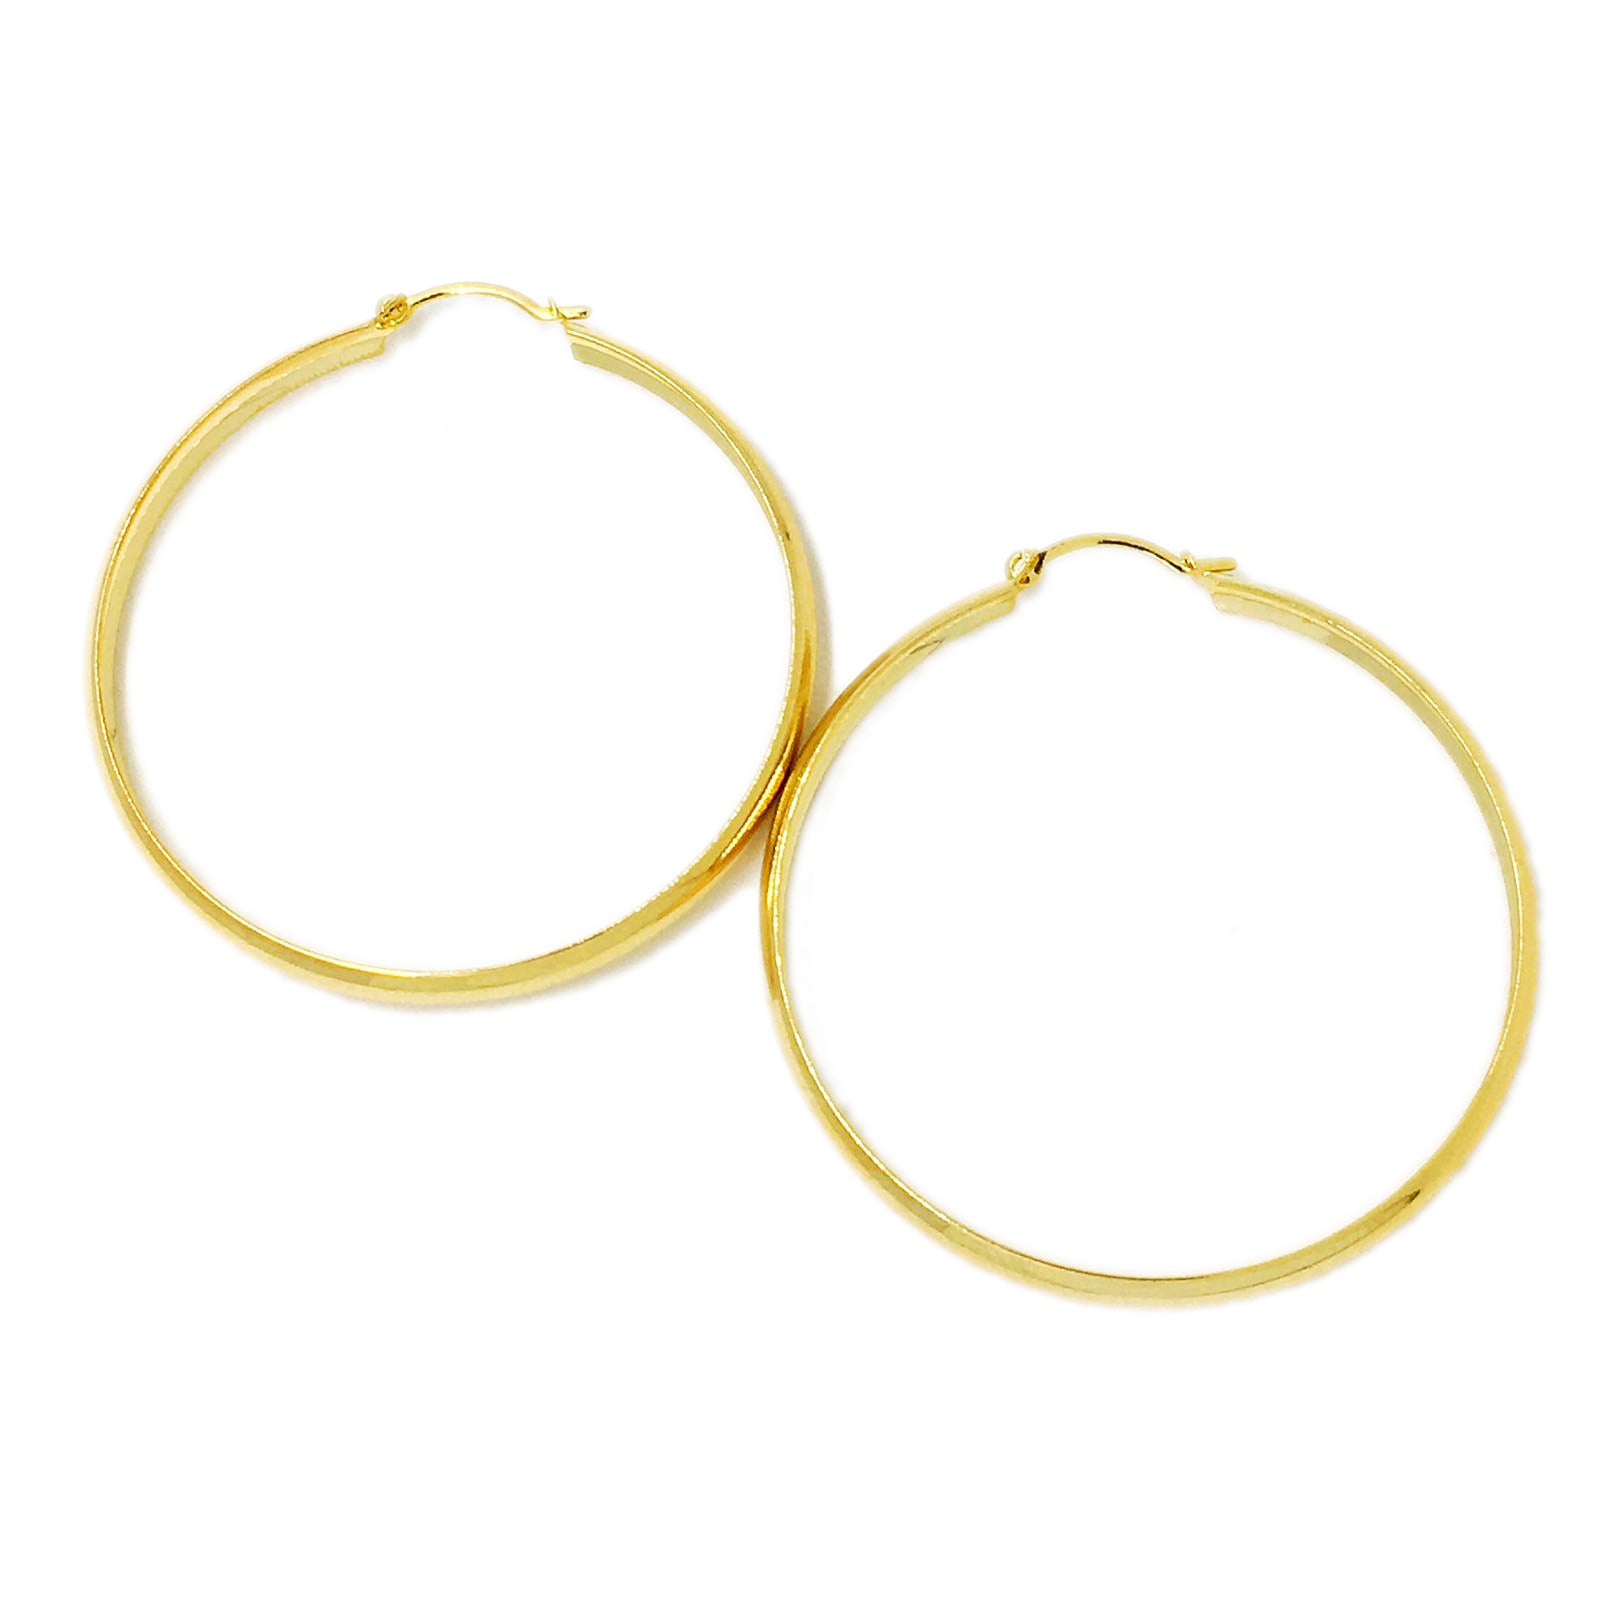 GoldFi Light 18k Gold Filled Hoop Earrings 50mm Diameter